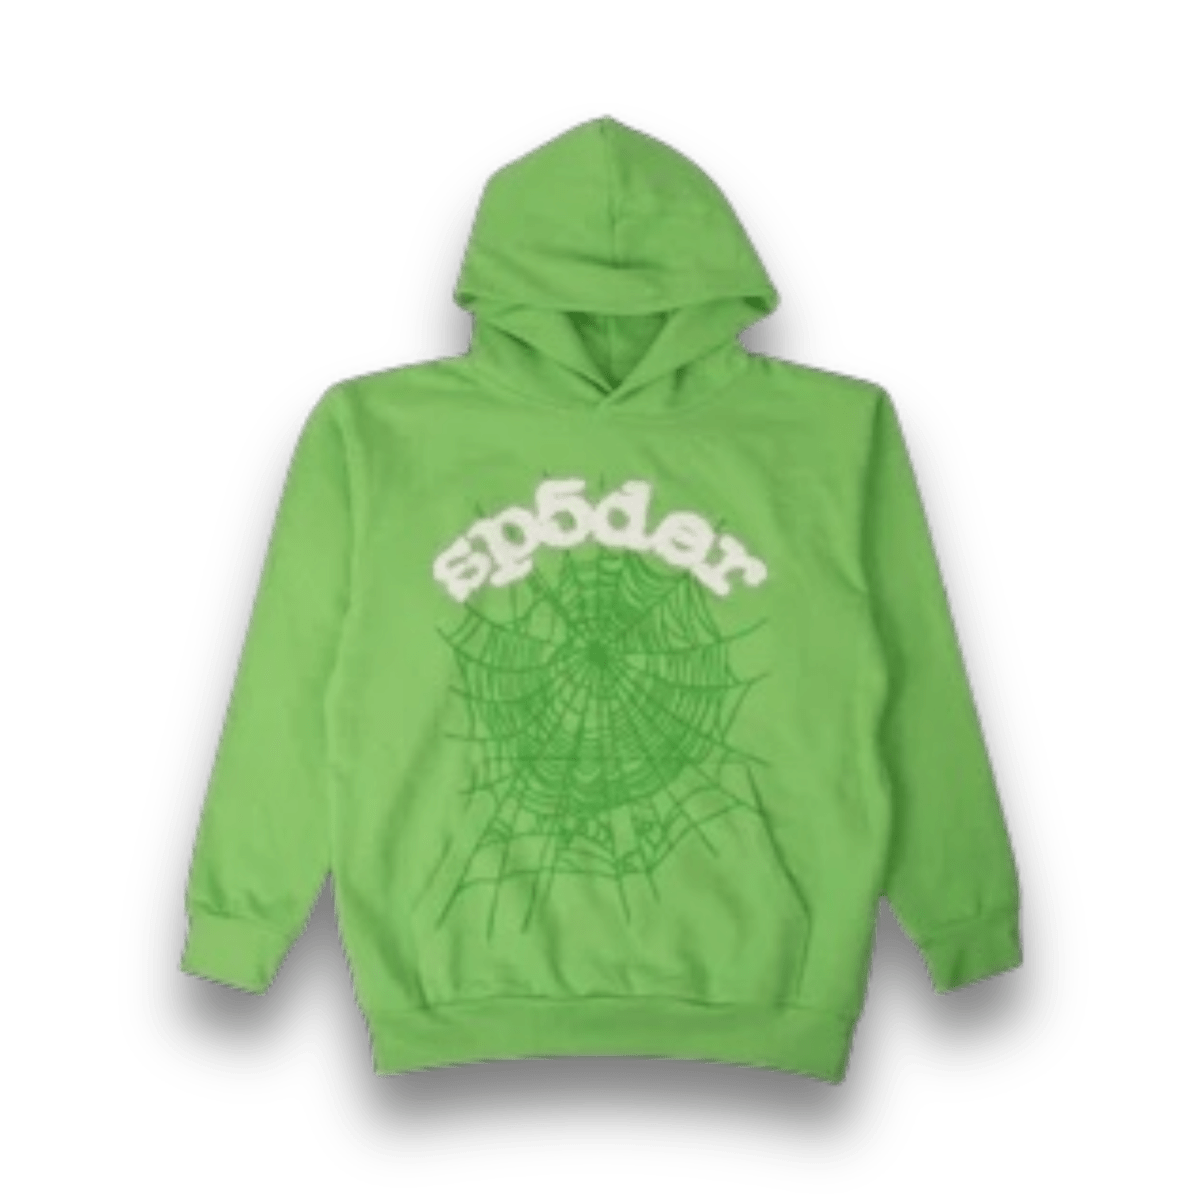 Sp5der OG Rhinestone Hoodie 'Green' - Hoodie - Jawns on Fire Sneakers & Streetwear